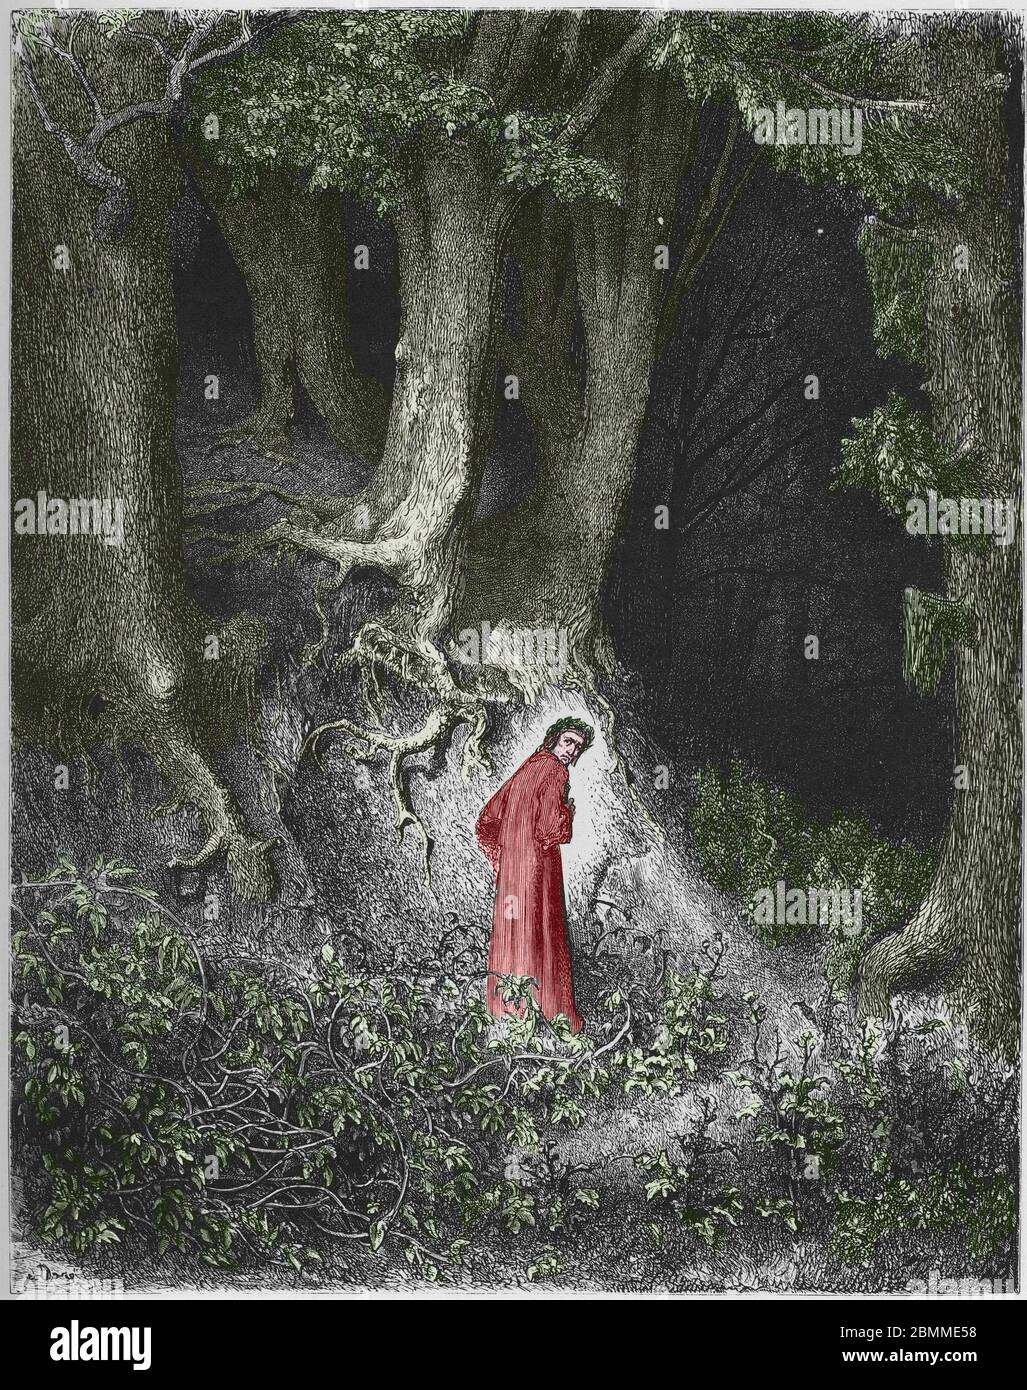 Premier chant de l'Enfer : le poete Dante se retrouve dans une foret. Illustration de la 'Divine Comedie' (Divina Commedia) de Dante Alighieri (1265-1 Stock Photo